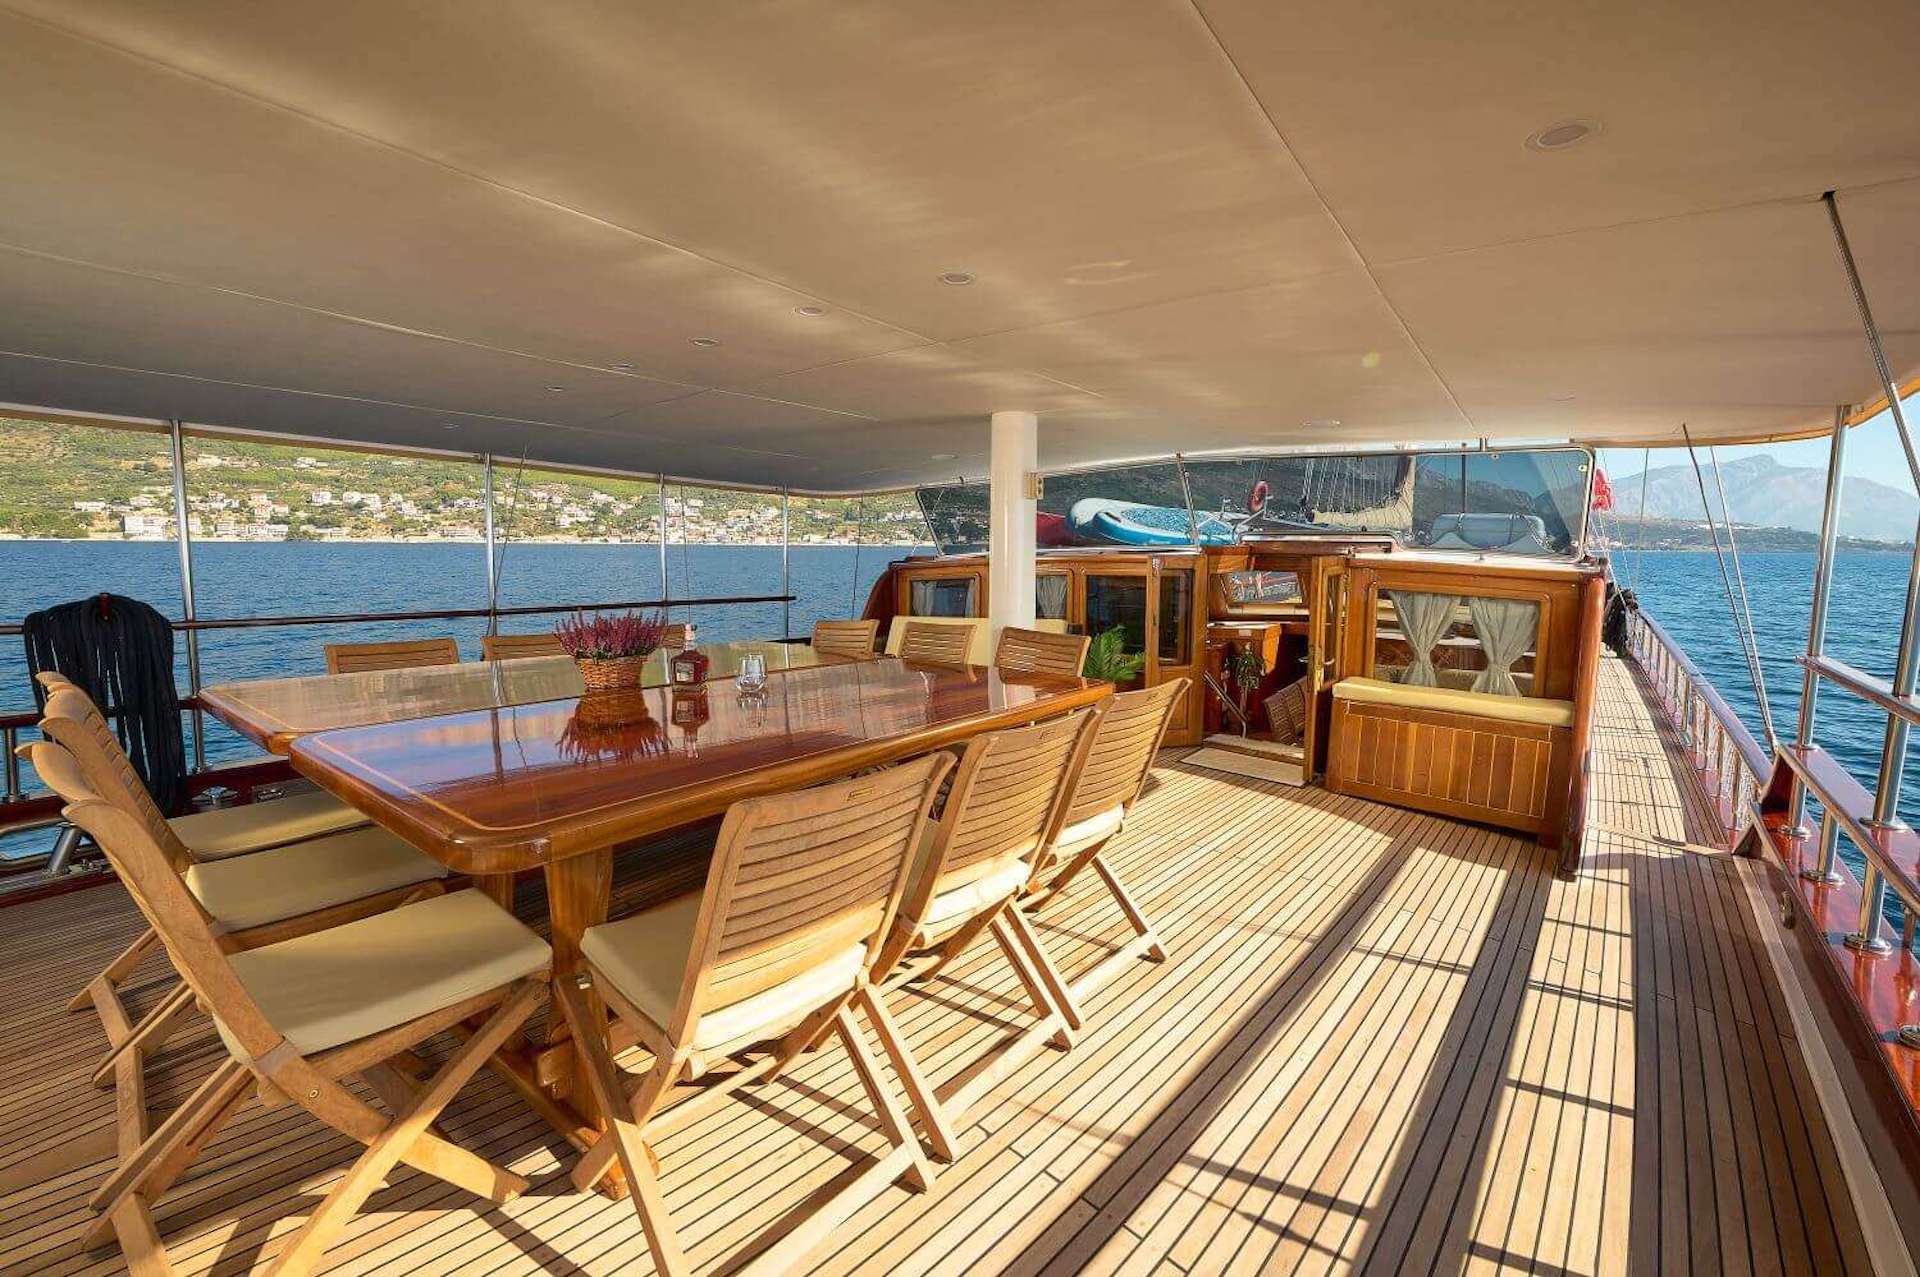 Croatian yacht charter Linda alfresco dining